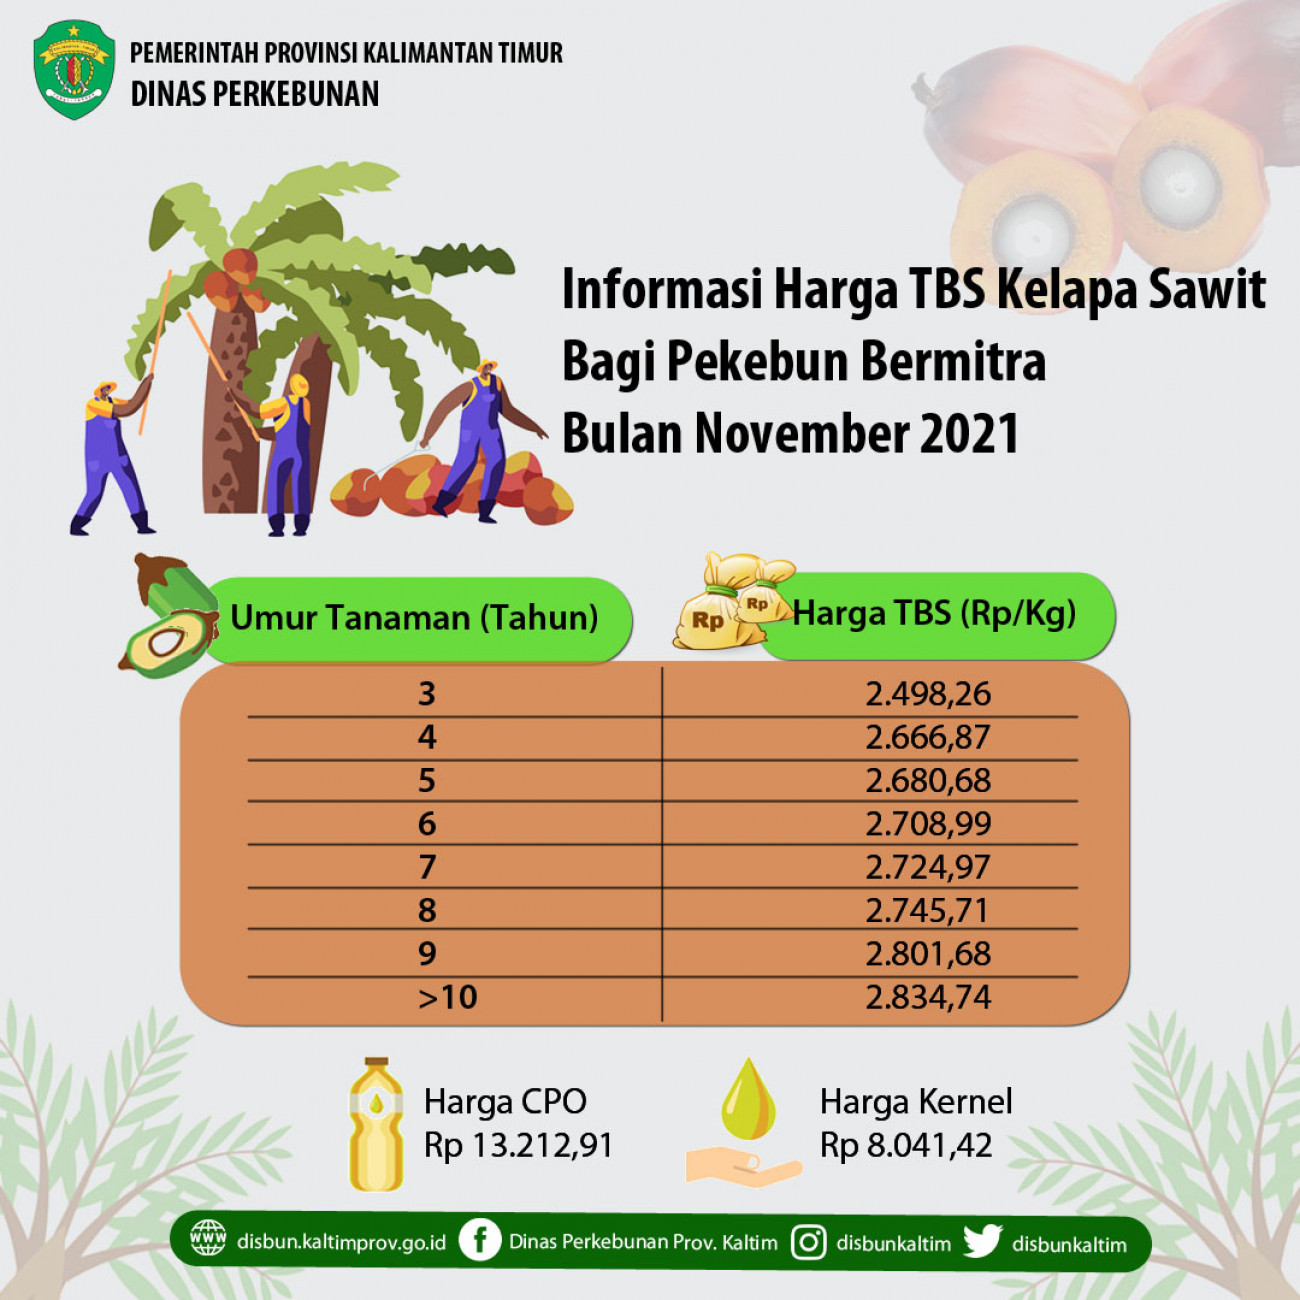 Informasi Harga TBS Kelapa Sawit Bagi Pekebun Bermitra Bulan November 2021